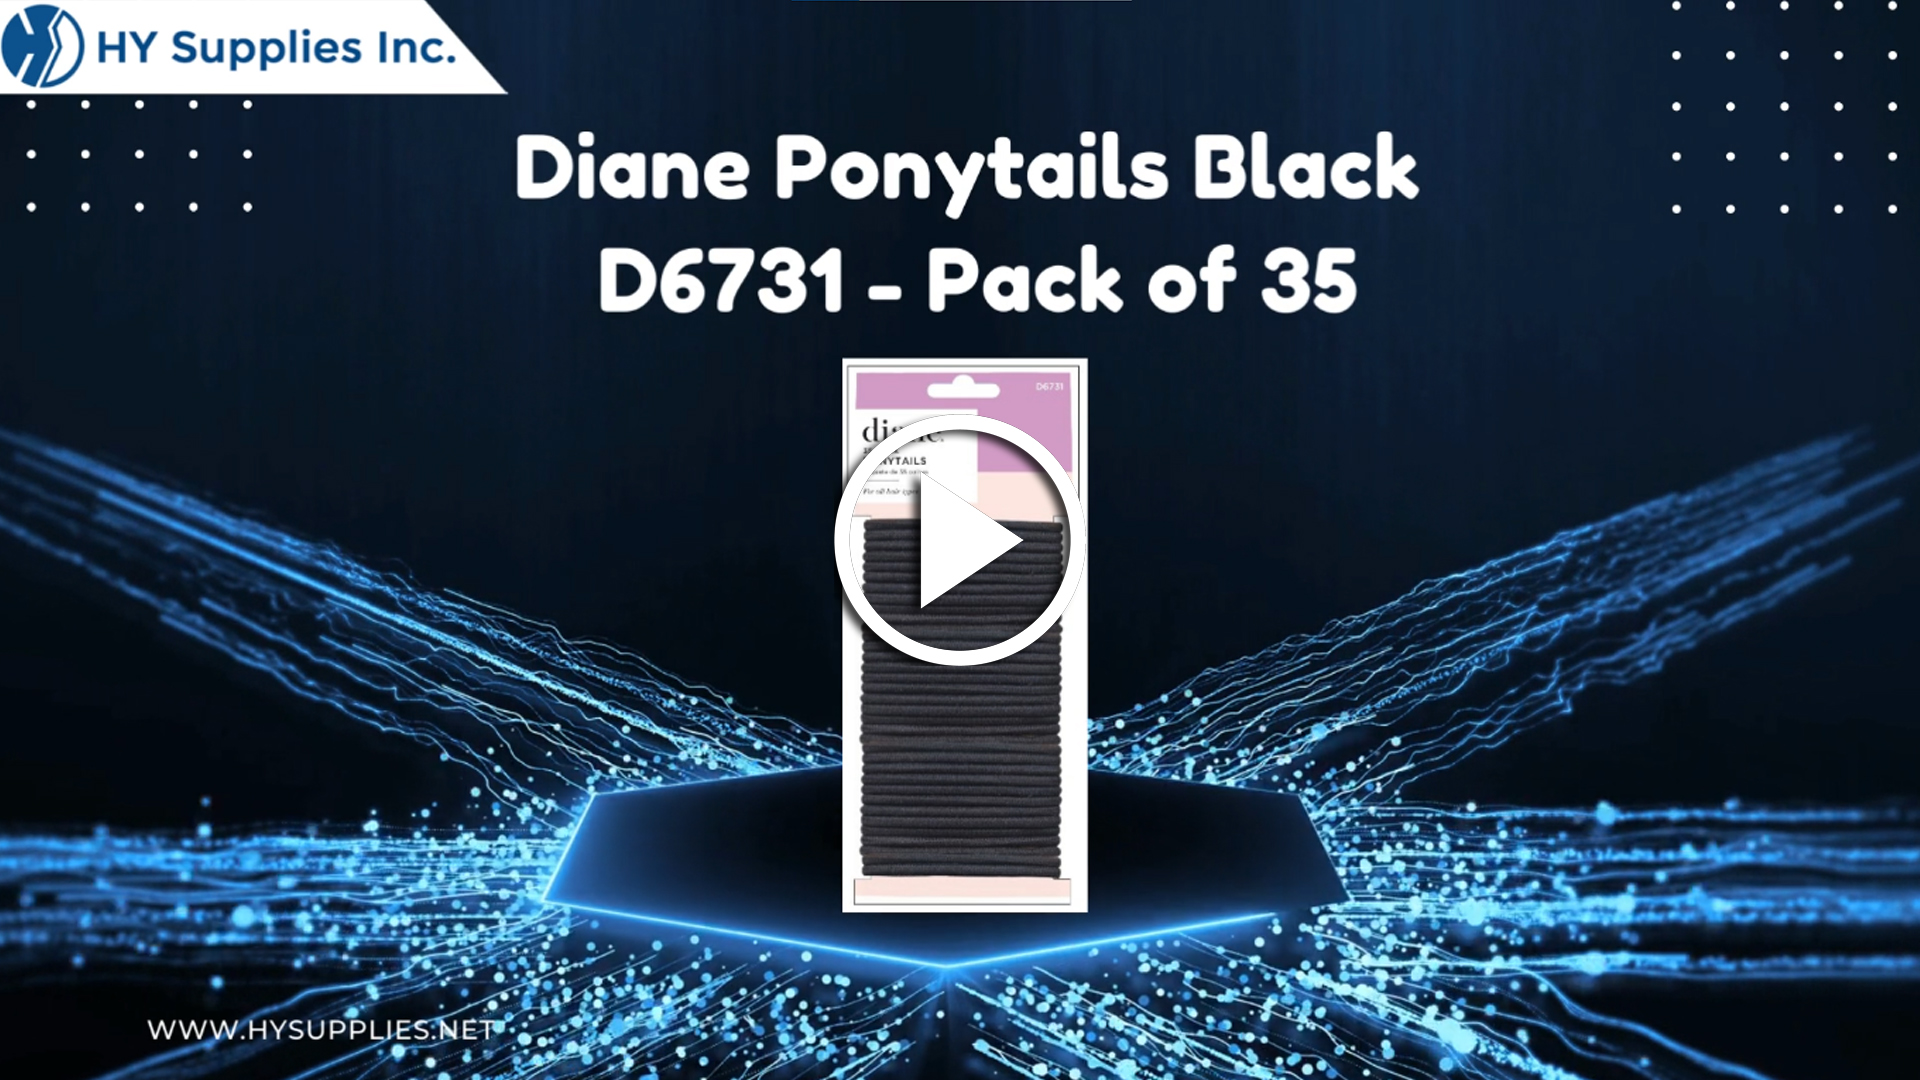 Diane Ponytails Black D6731 - Pack of 35